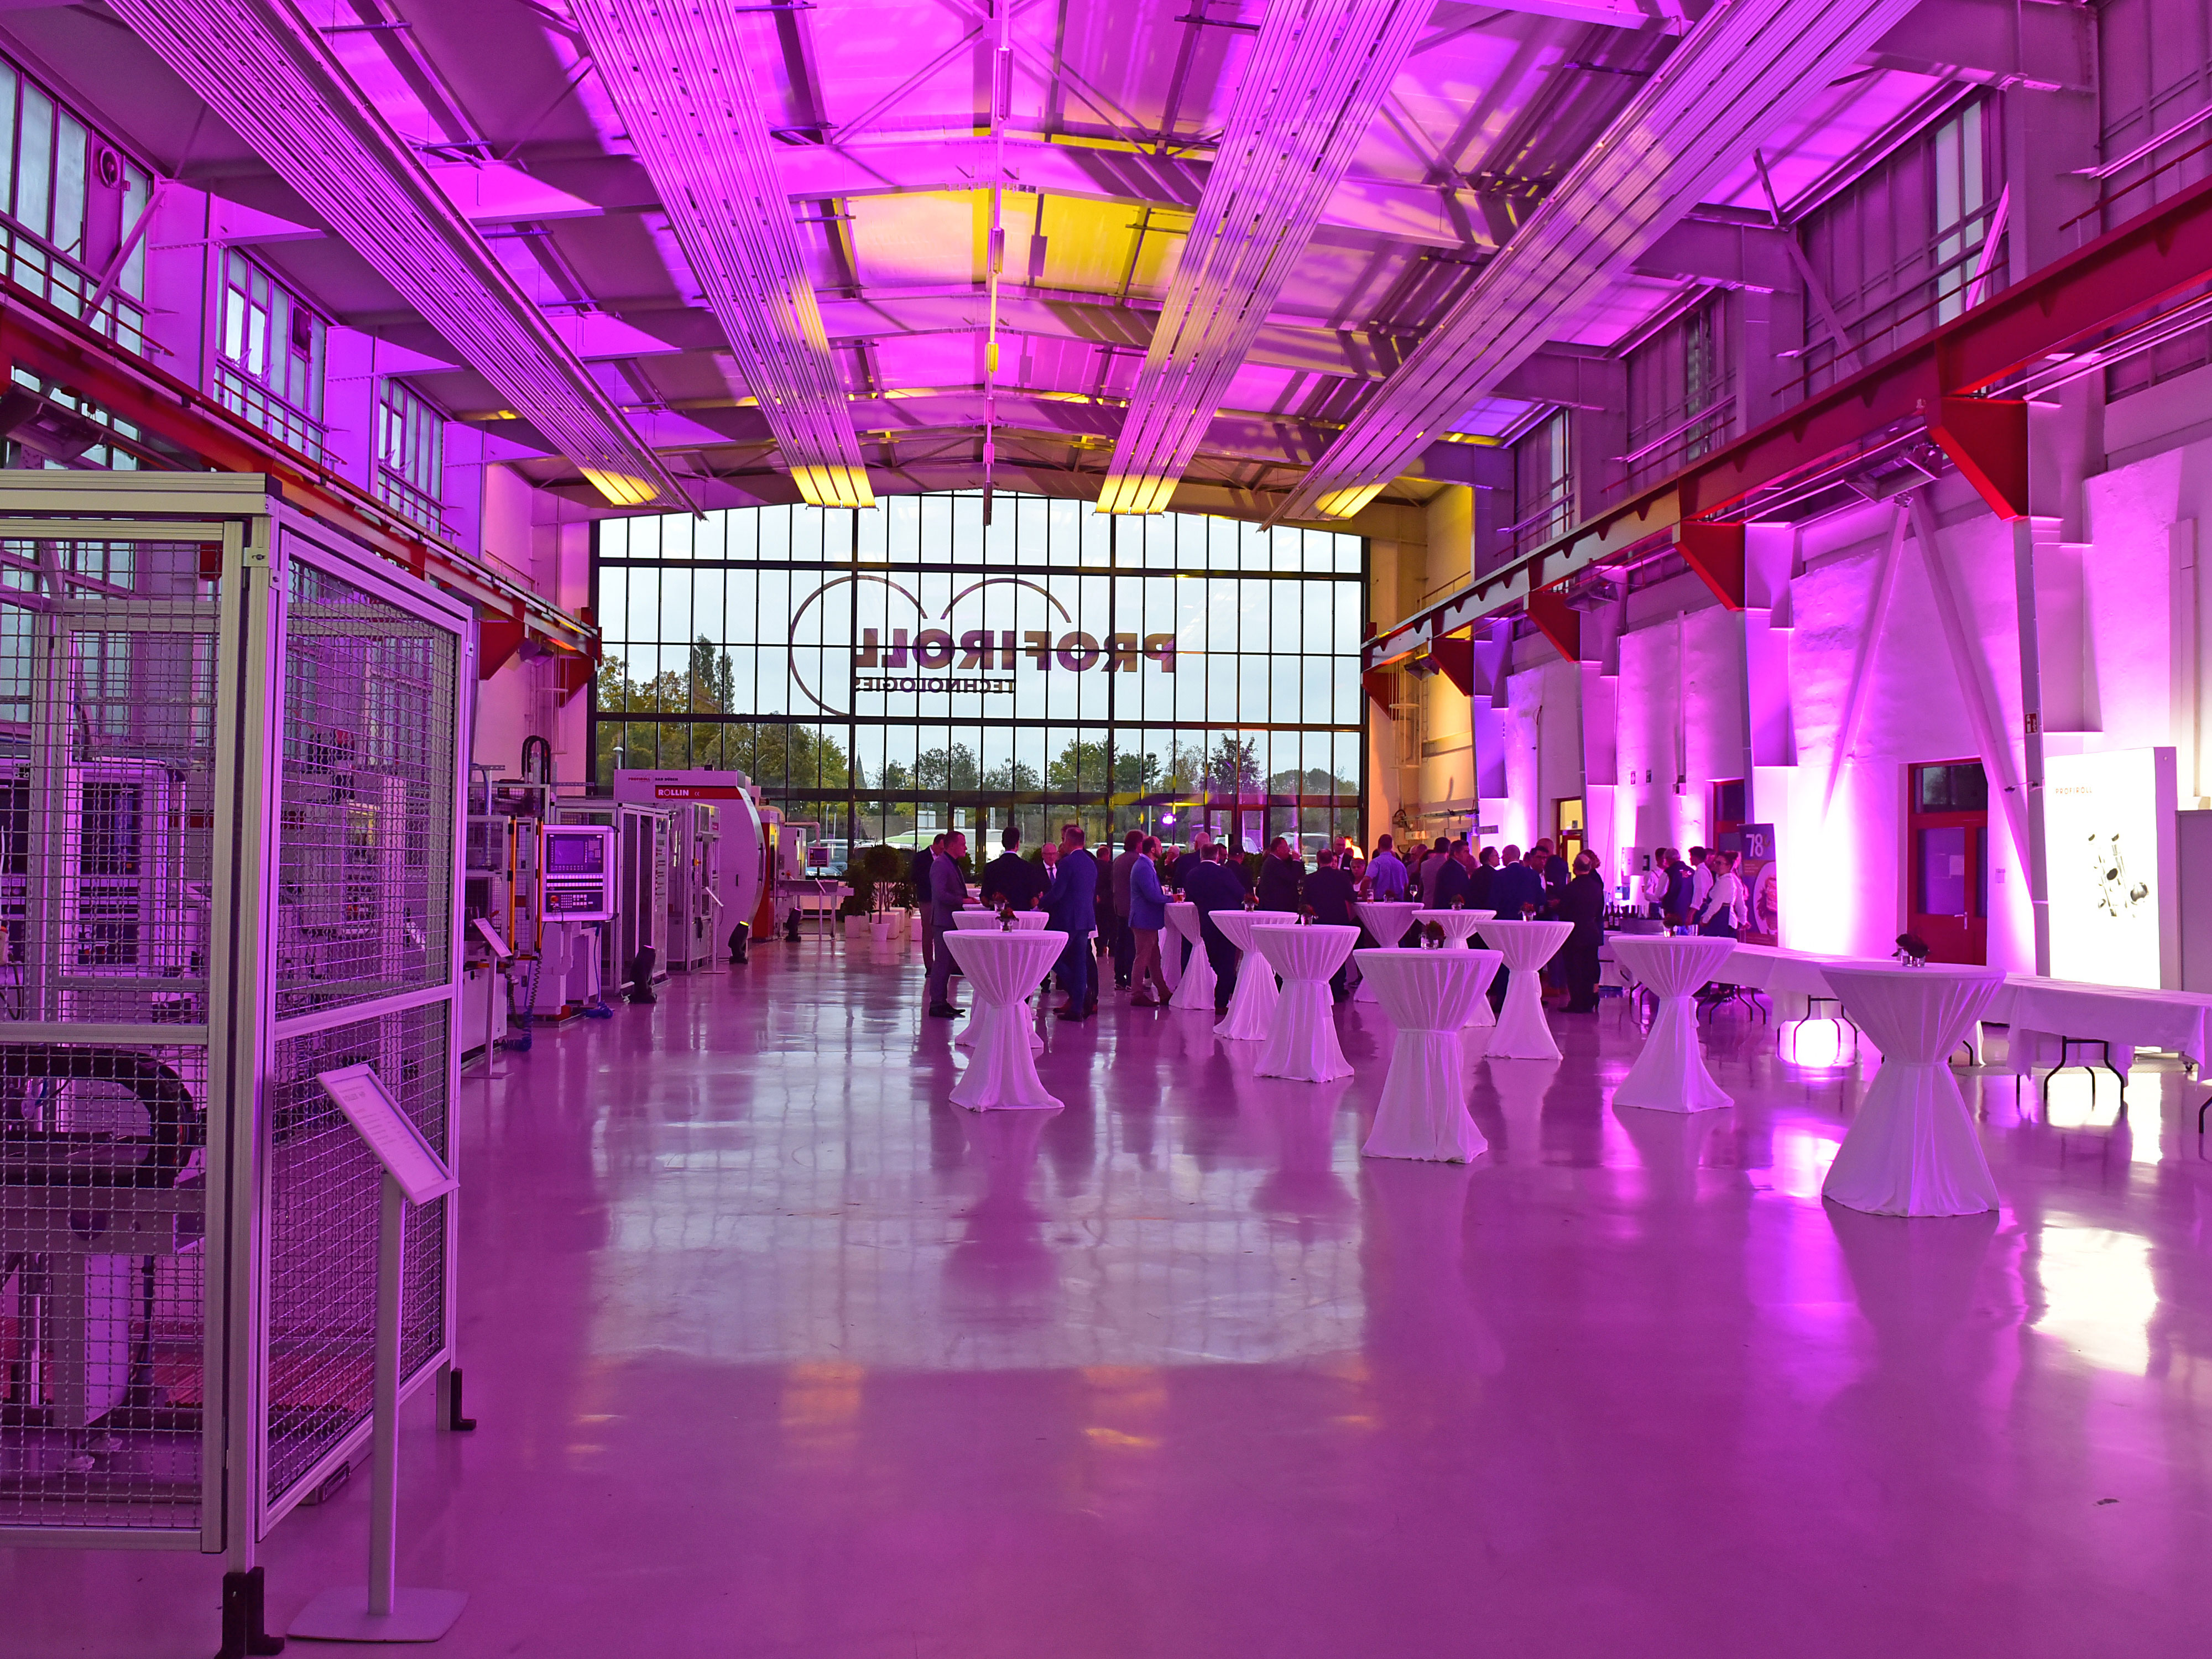 Große Fabrikhalle, pink ausgeleuchtet, mit festlichen Stehtischen